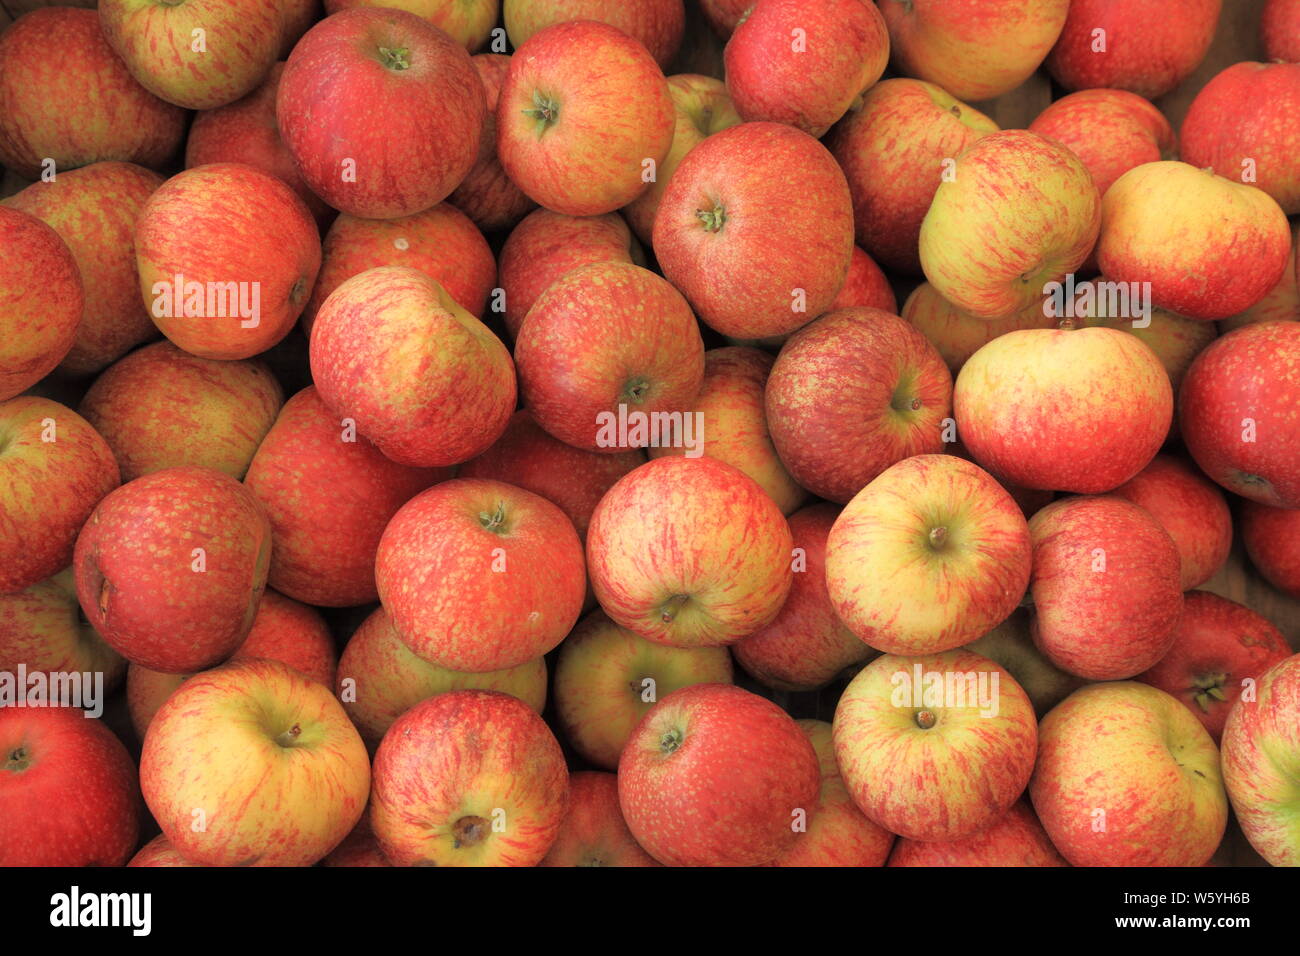 Apple' Schönheit der Badewanne", Äpfel, Sorte, Sorten, Farm Shop Anzeige, Norfolk, England Stockfoto